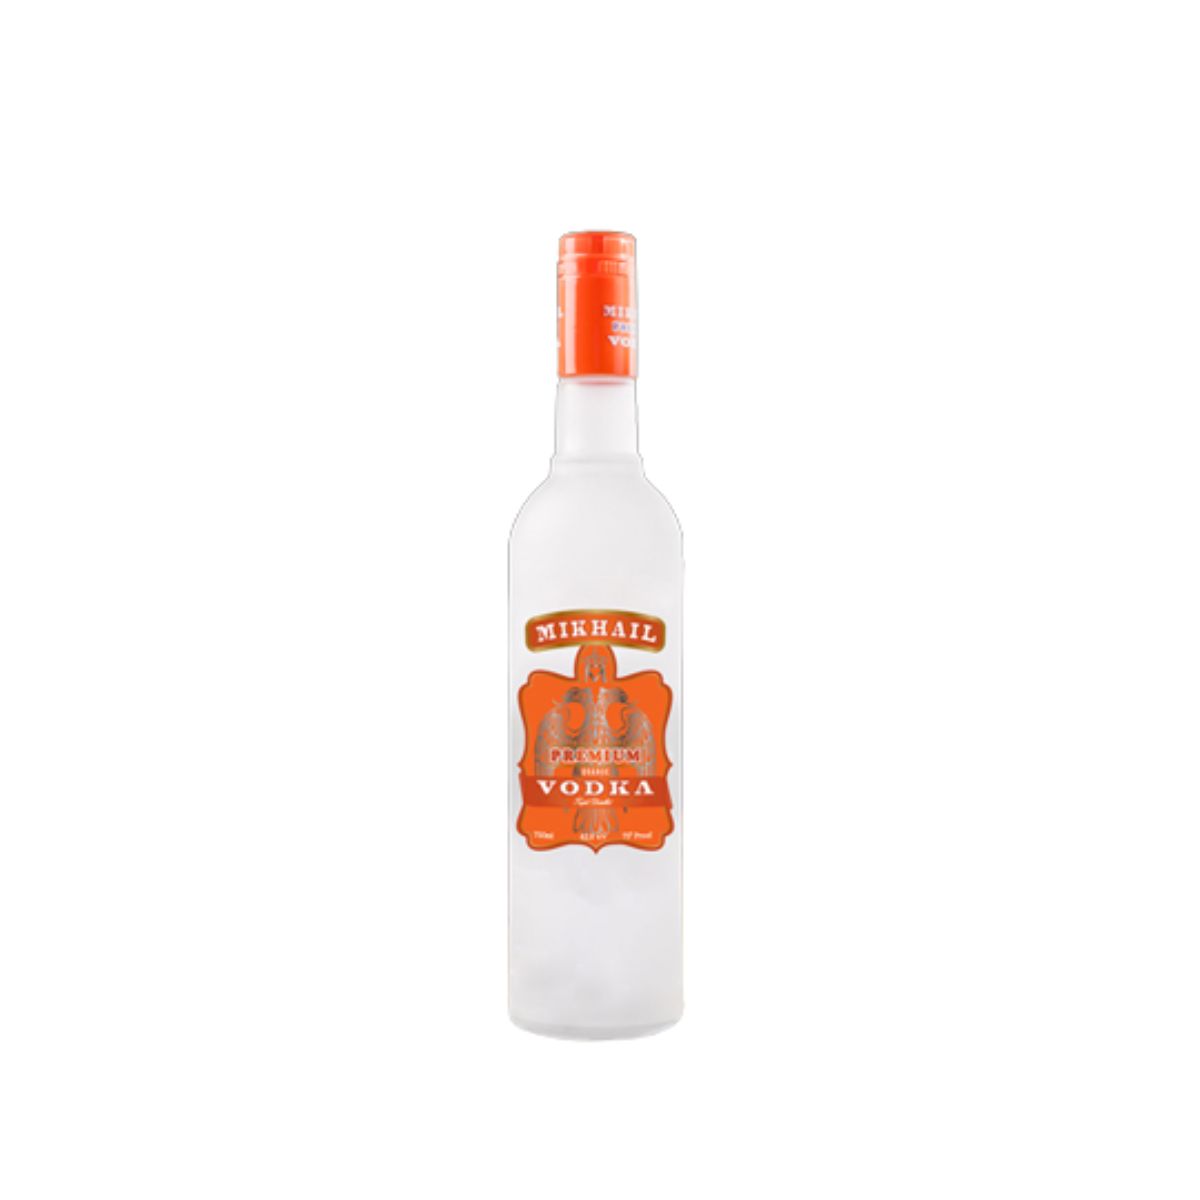 Mikhail Premium Vodka - Peach - Triple Distilled - 42.8% v/v - 750ml